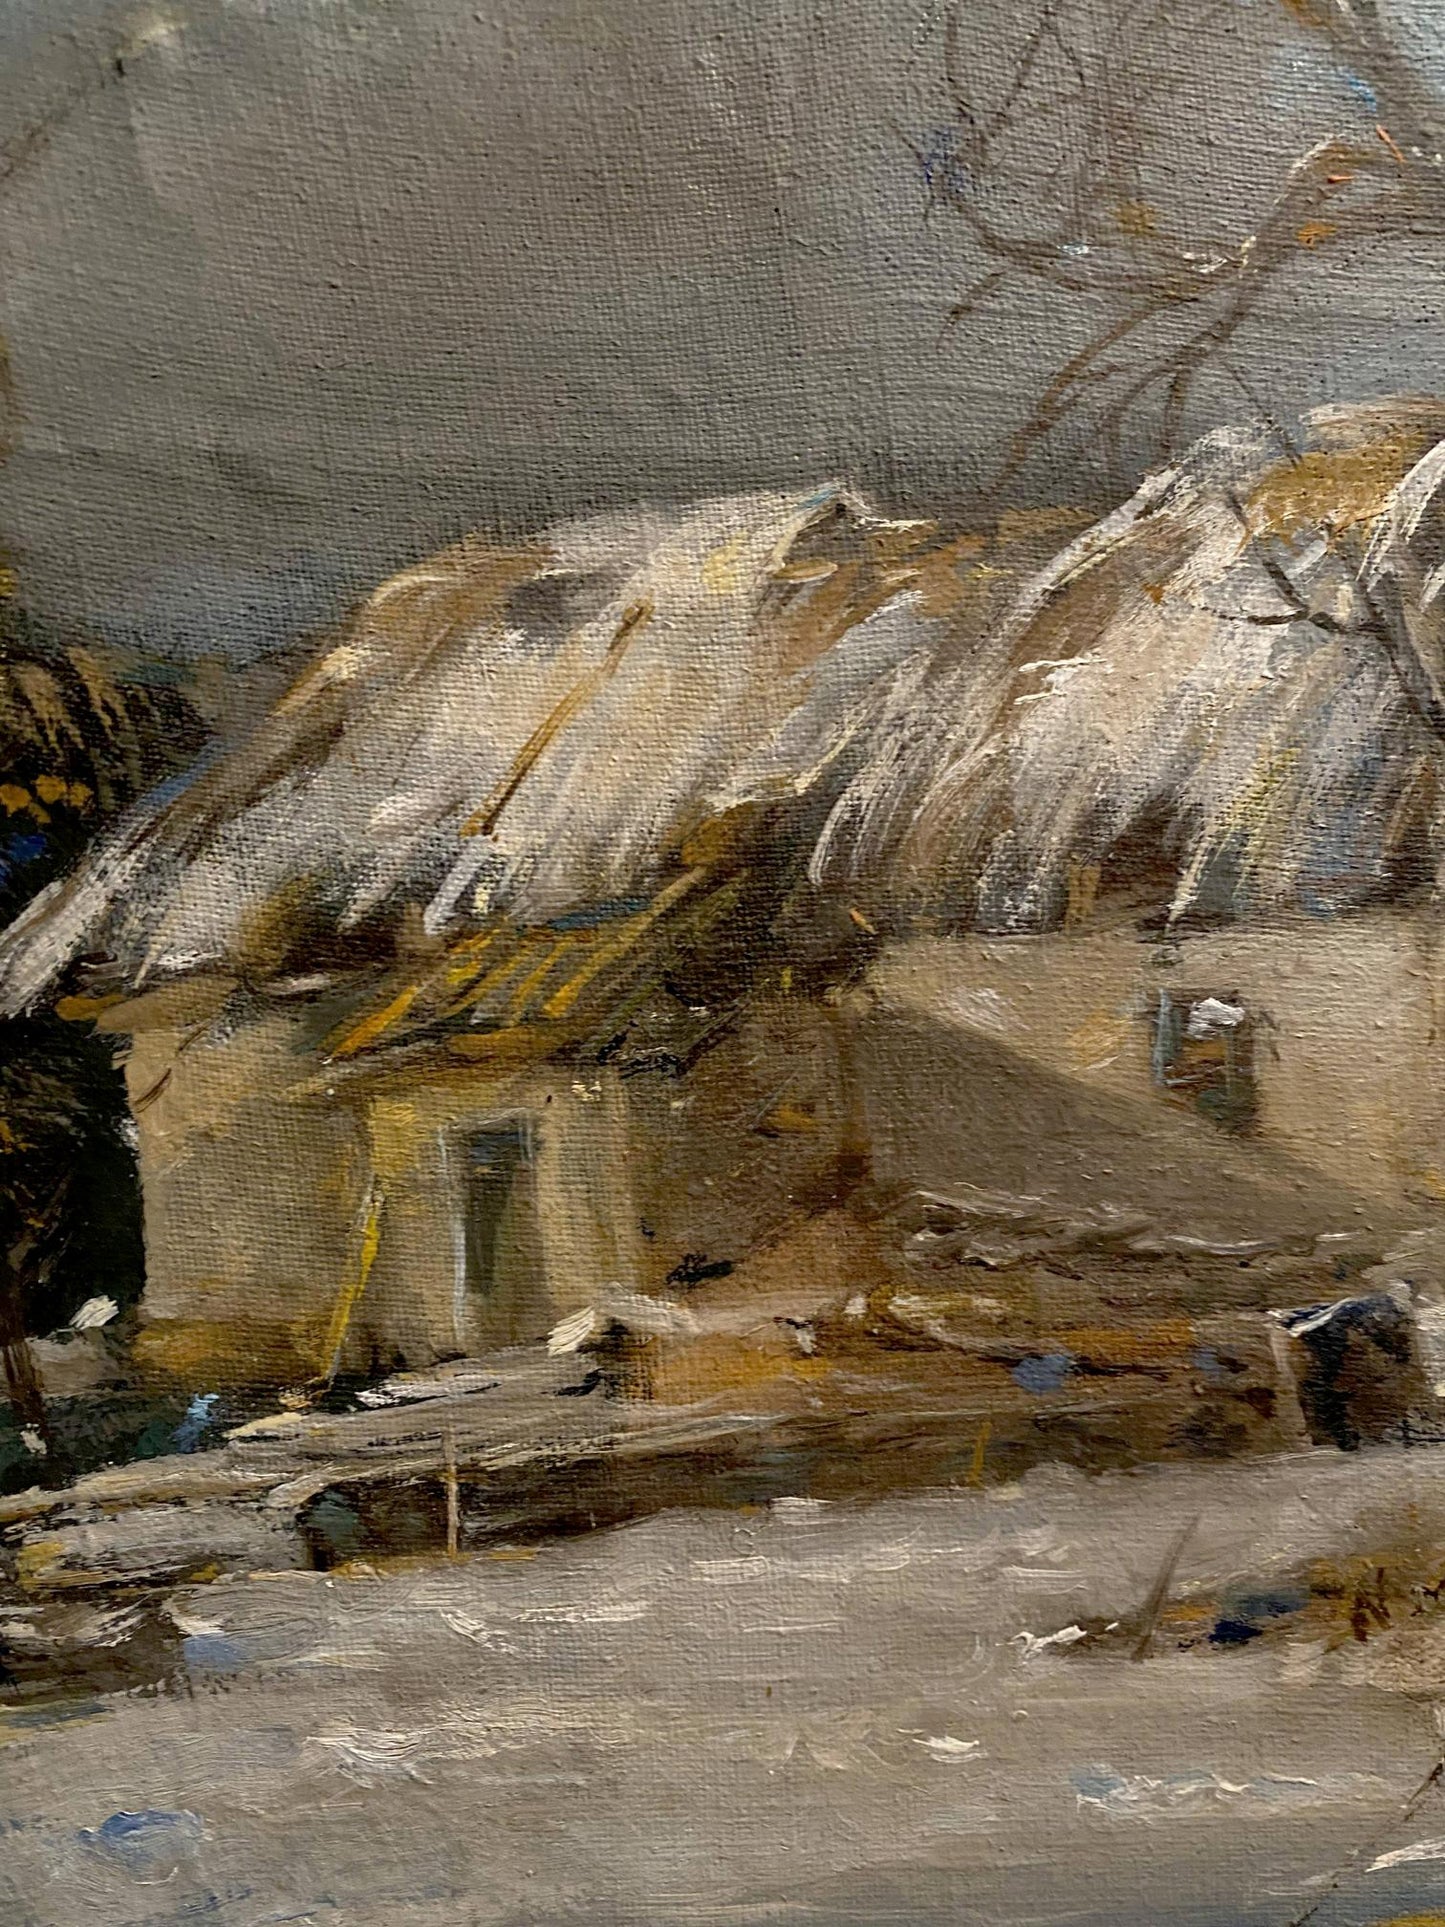 Oil painting Winter February day Oleg Litvinov